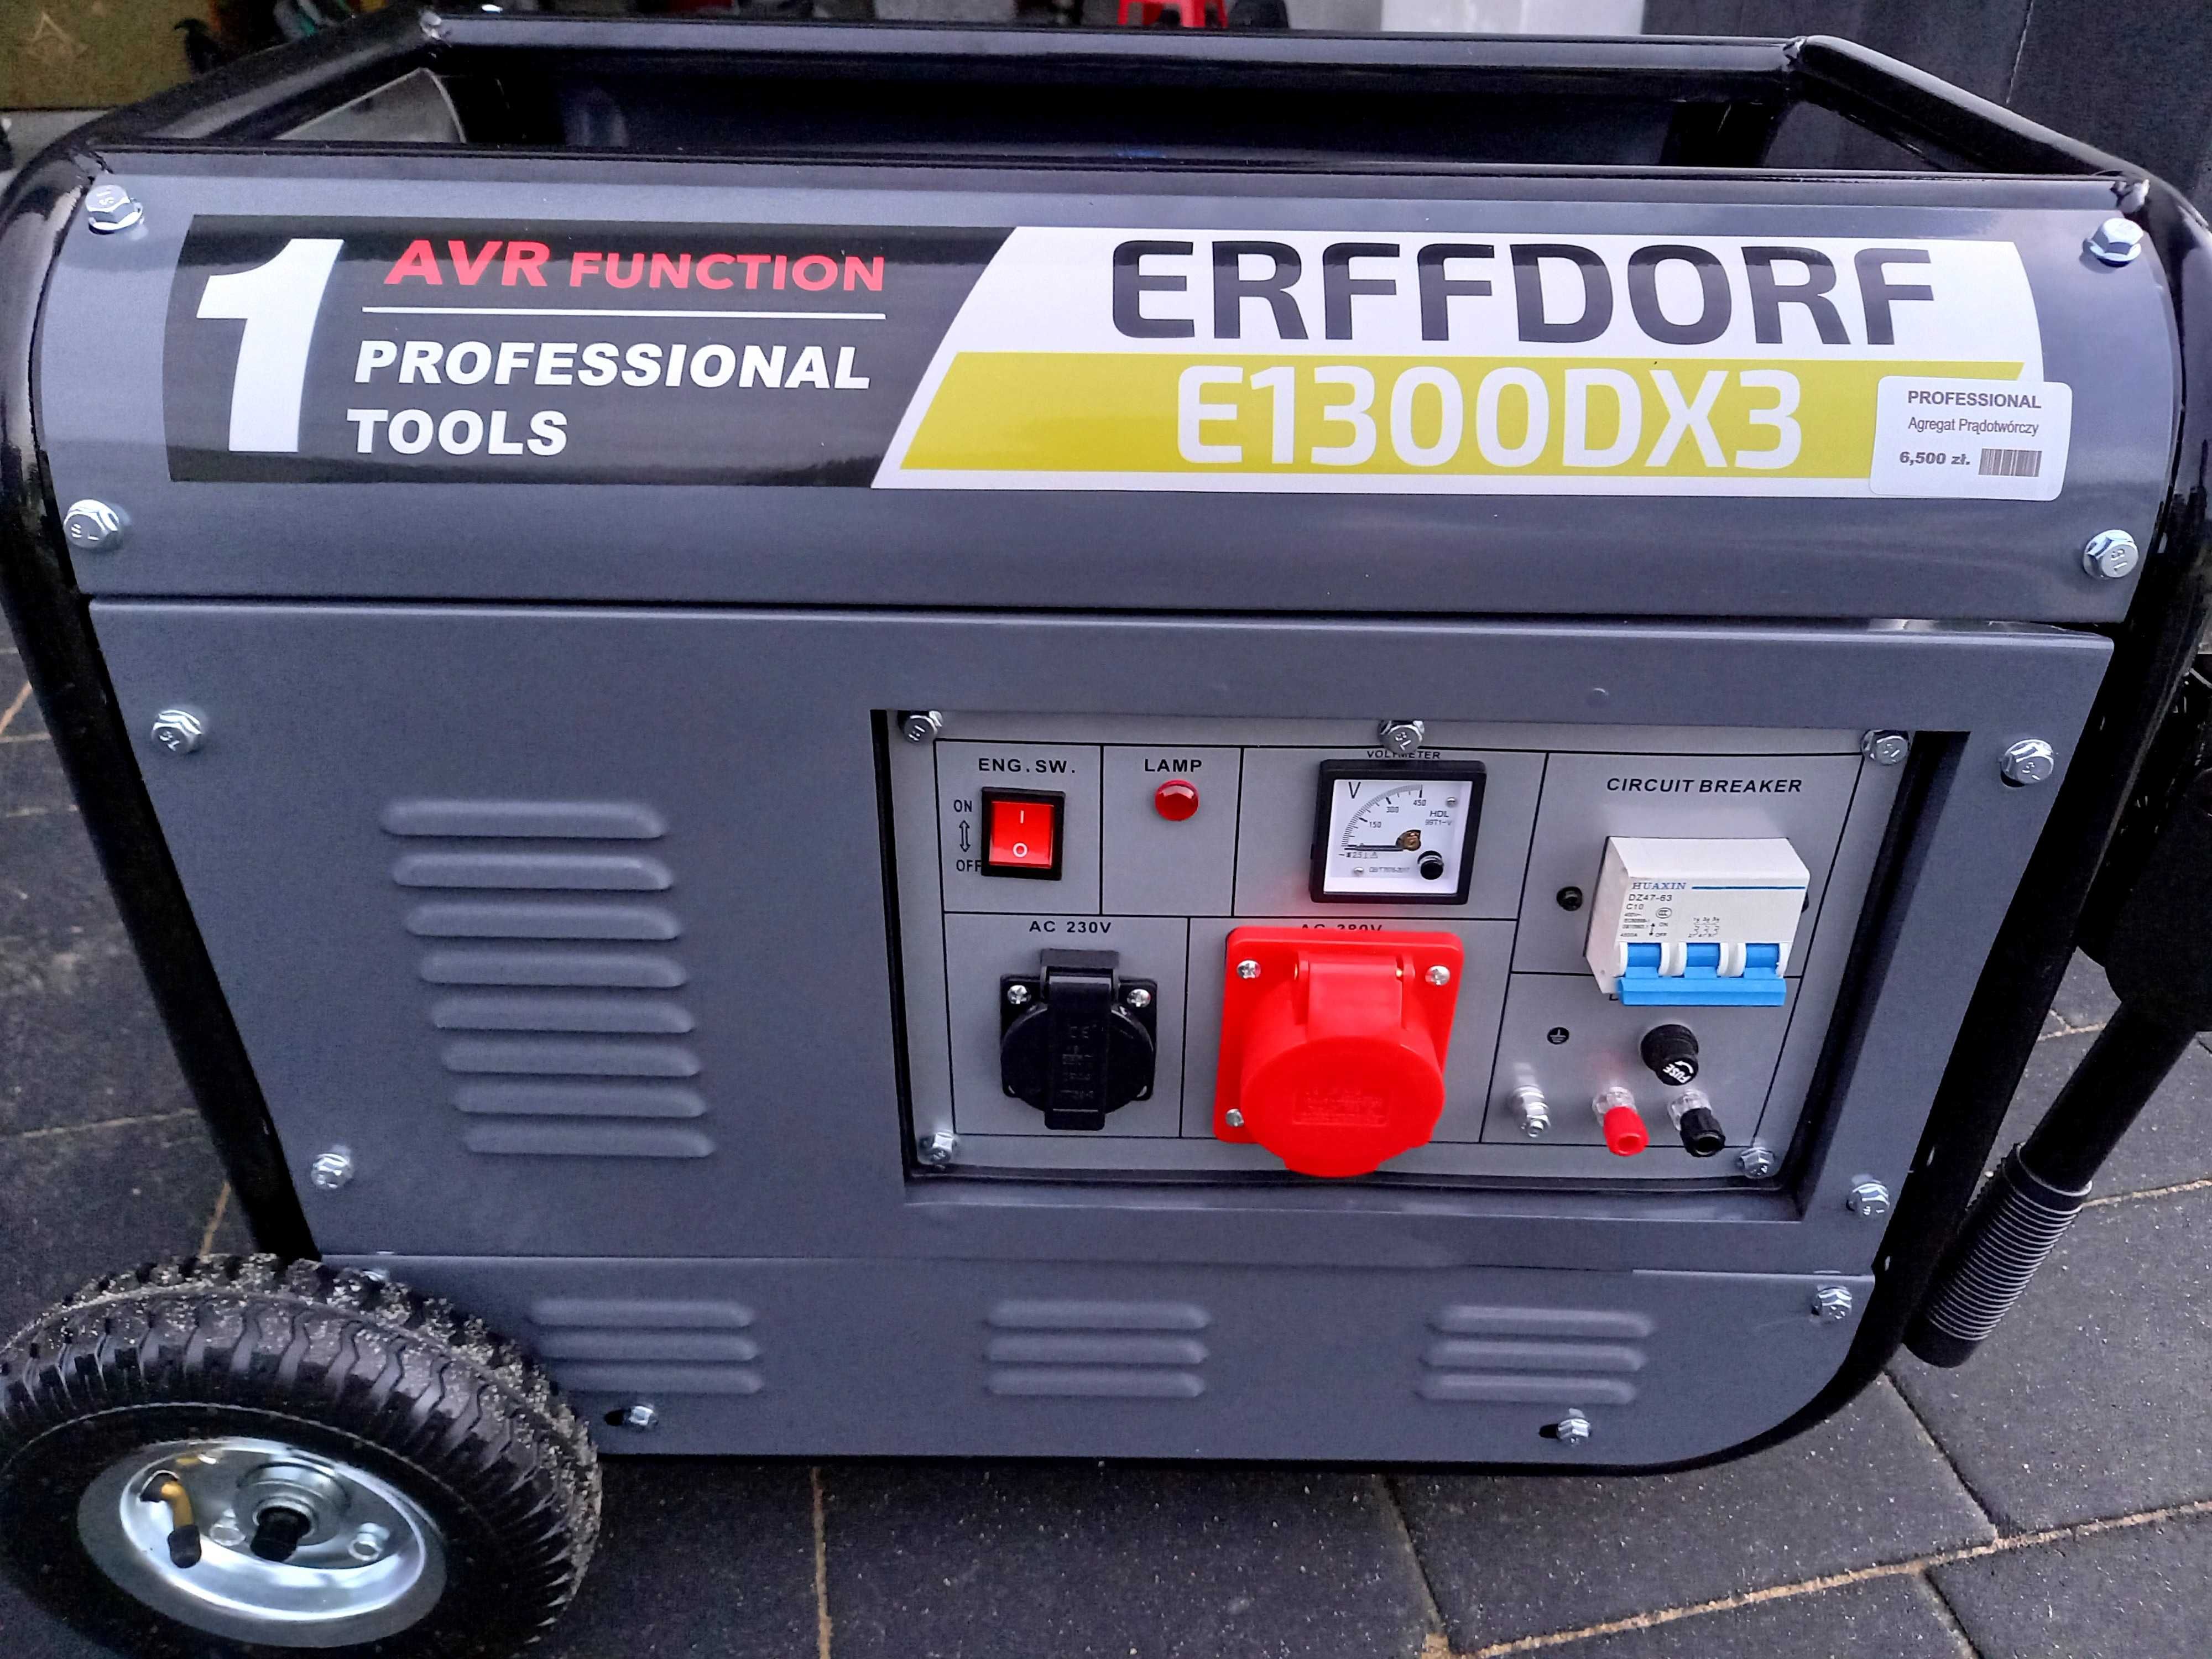 Agregat prądotwórczy Erffdorf E1300DX3, nowy 3 fazowy